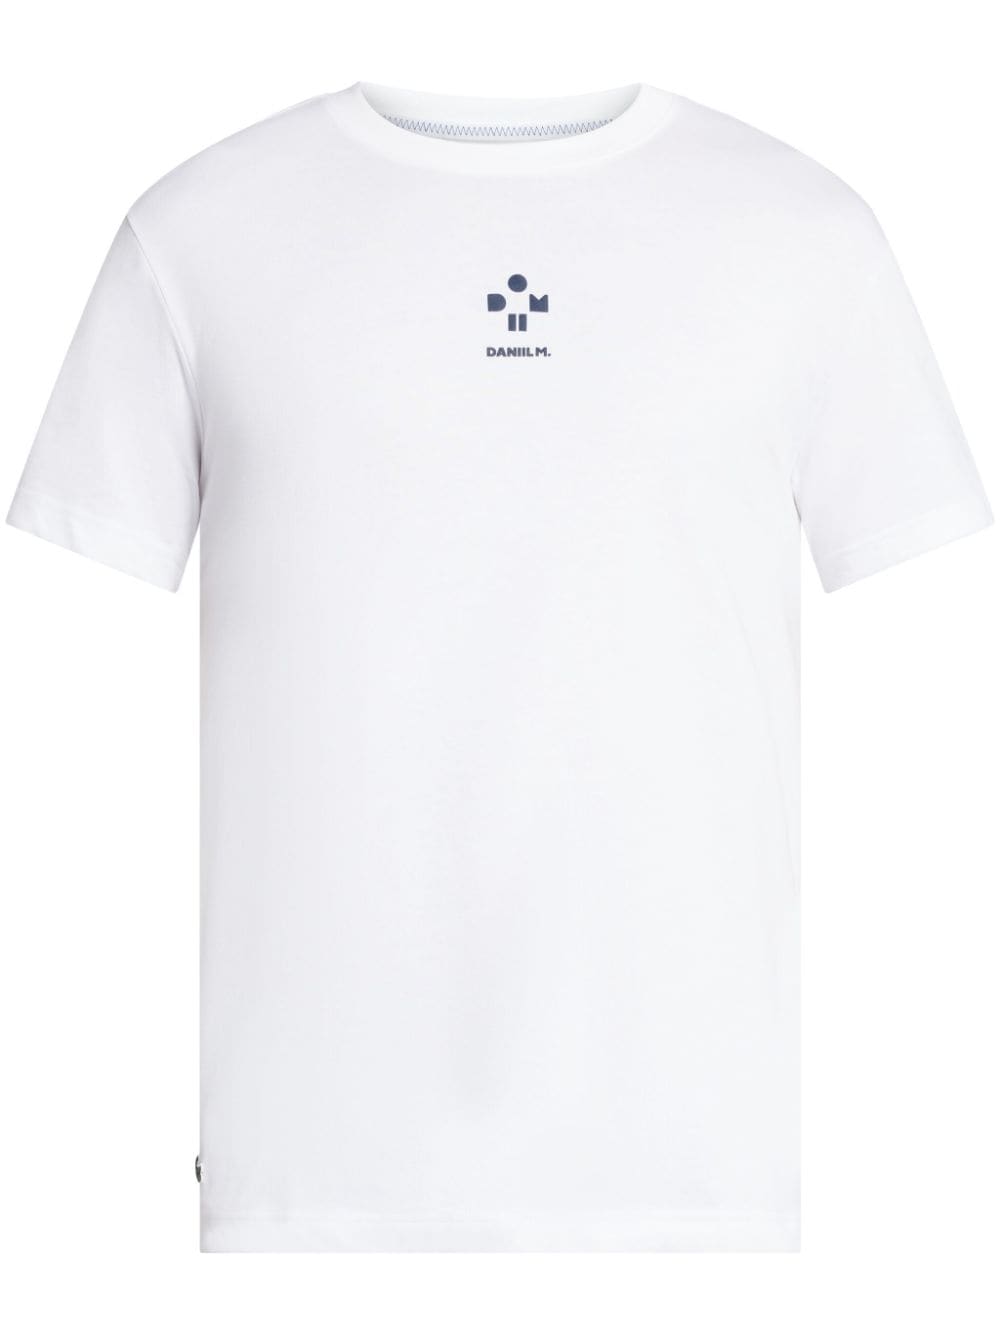 Lacoste white cotton-blend t-shirt von Lacoste